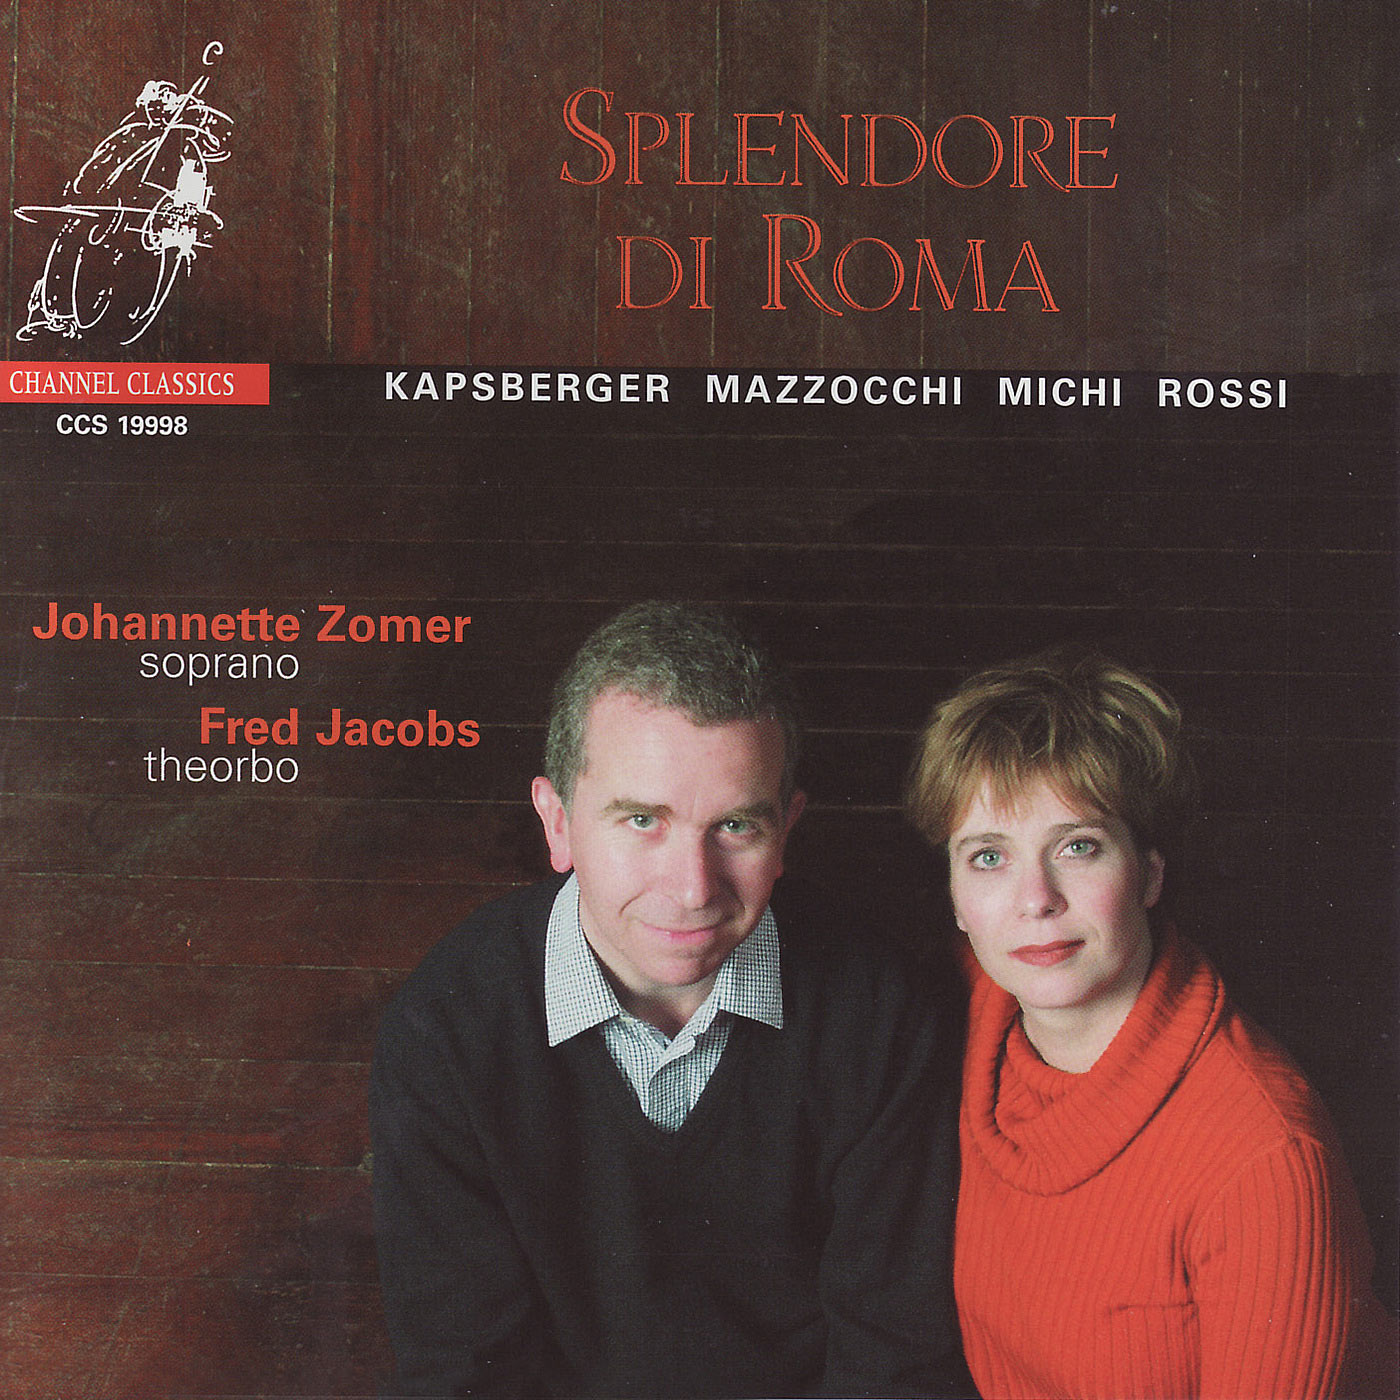 Kapsperger et al. - Splendore di Roma - Johannette Zomer, soprano & Fred Jacobs, theorbo (NMR)